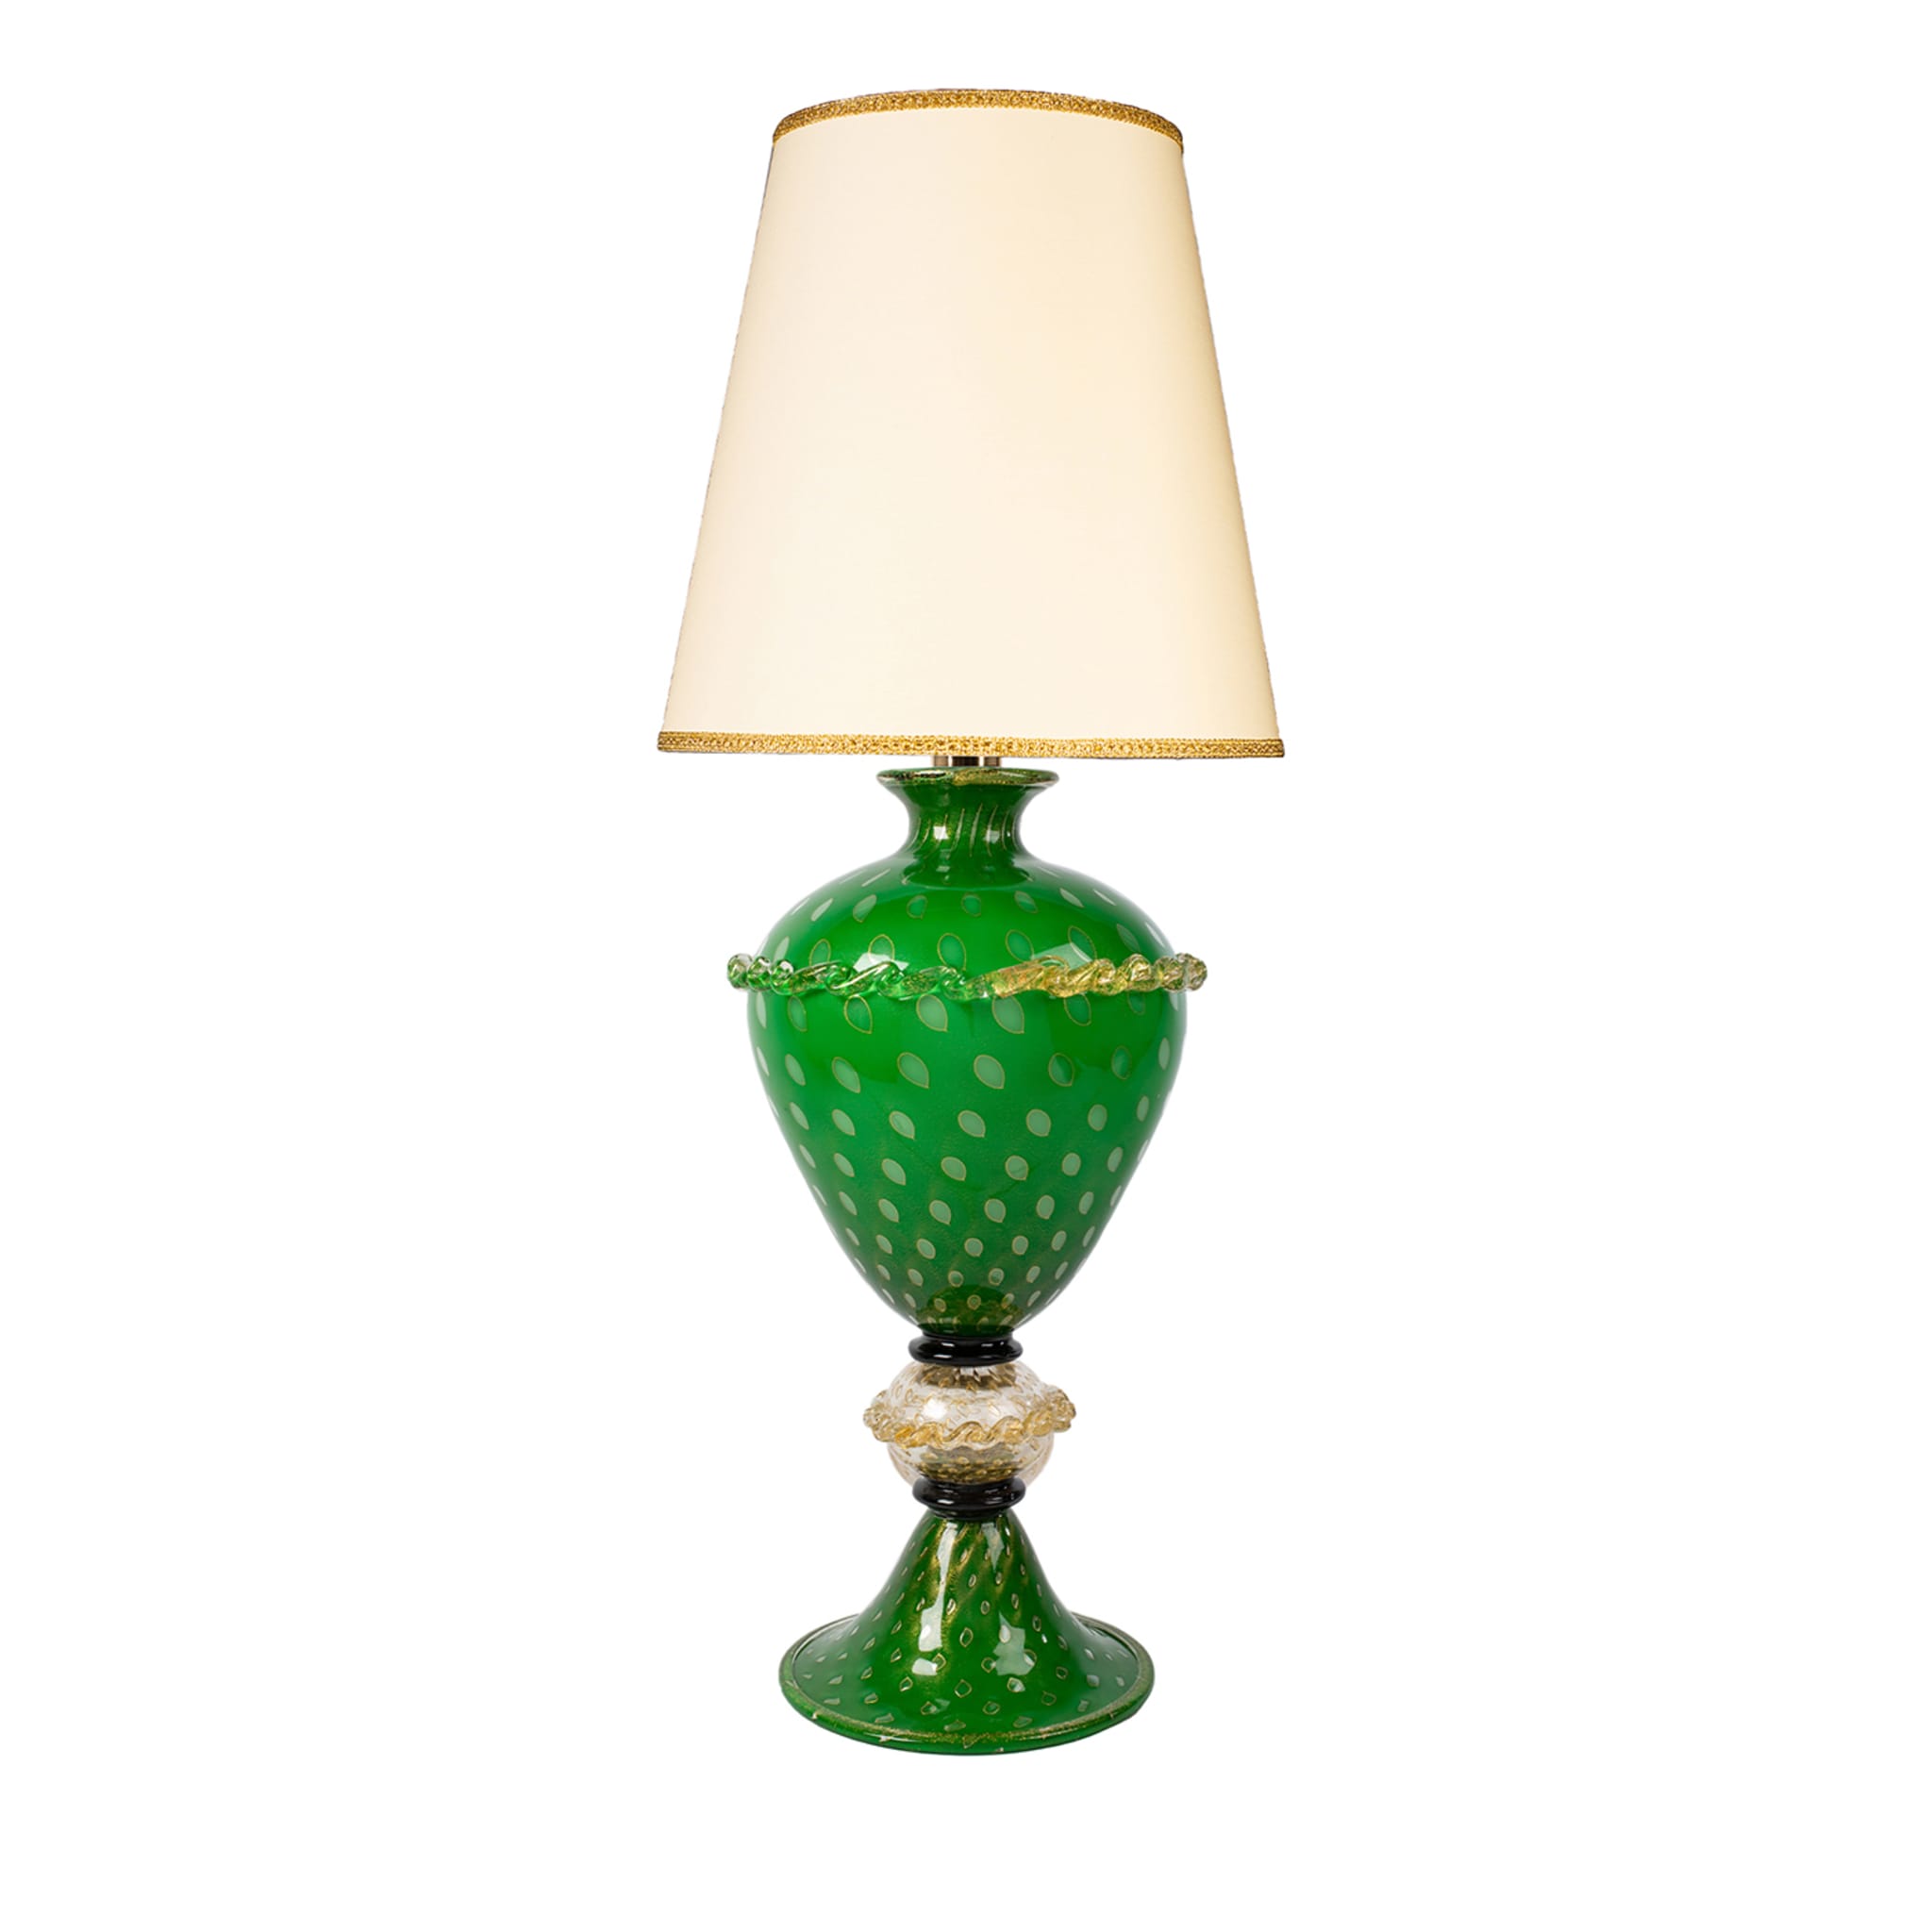 Grün-goldene Tischlampe - Hauptansicht